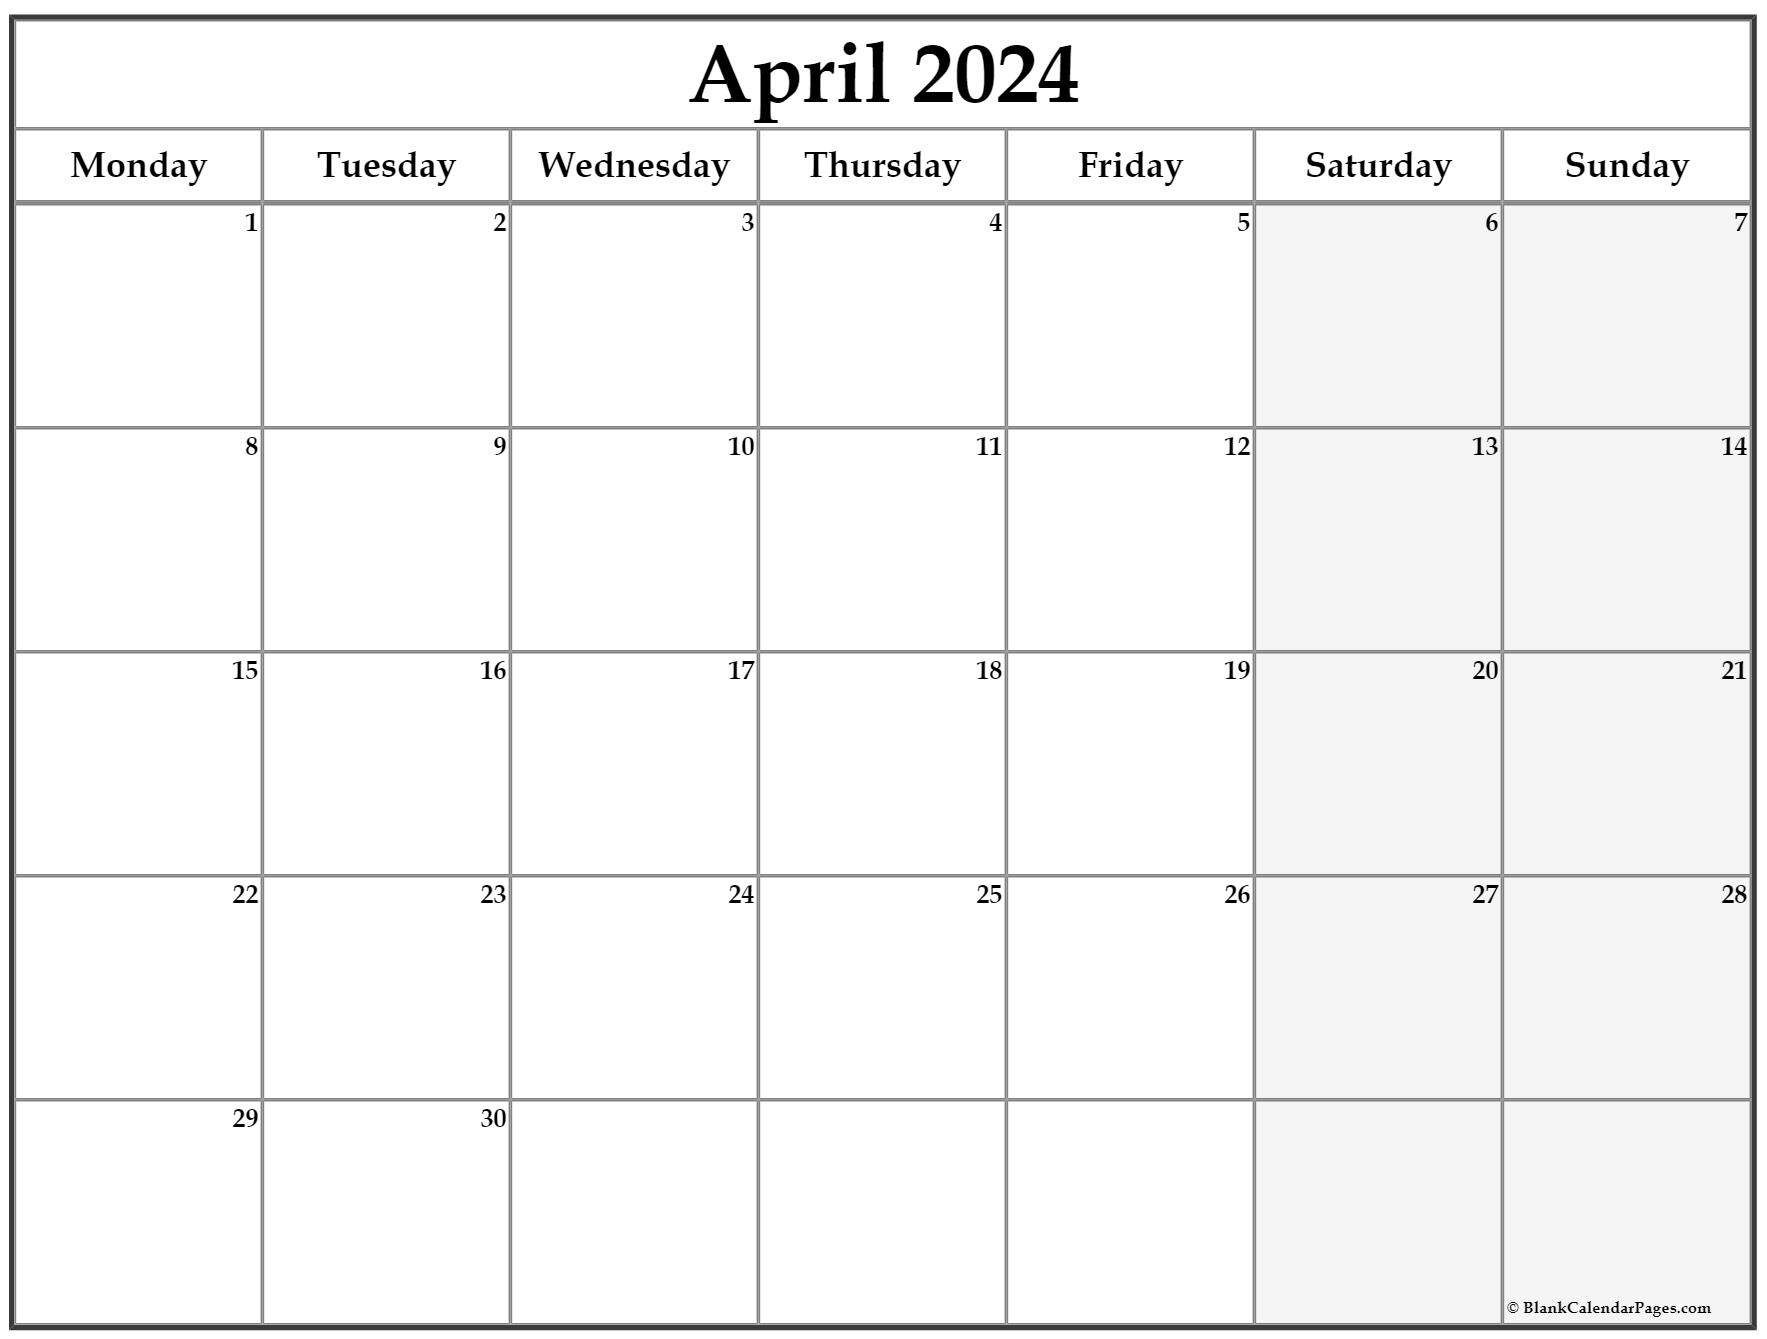 April 2022 Monday Calendar | Monday to Sunday